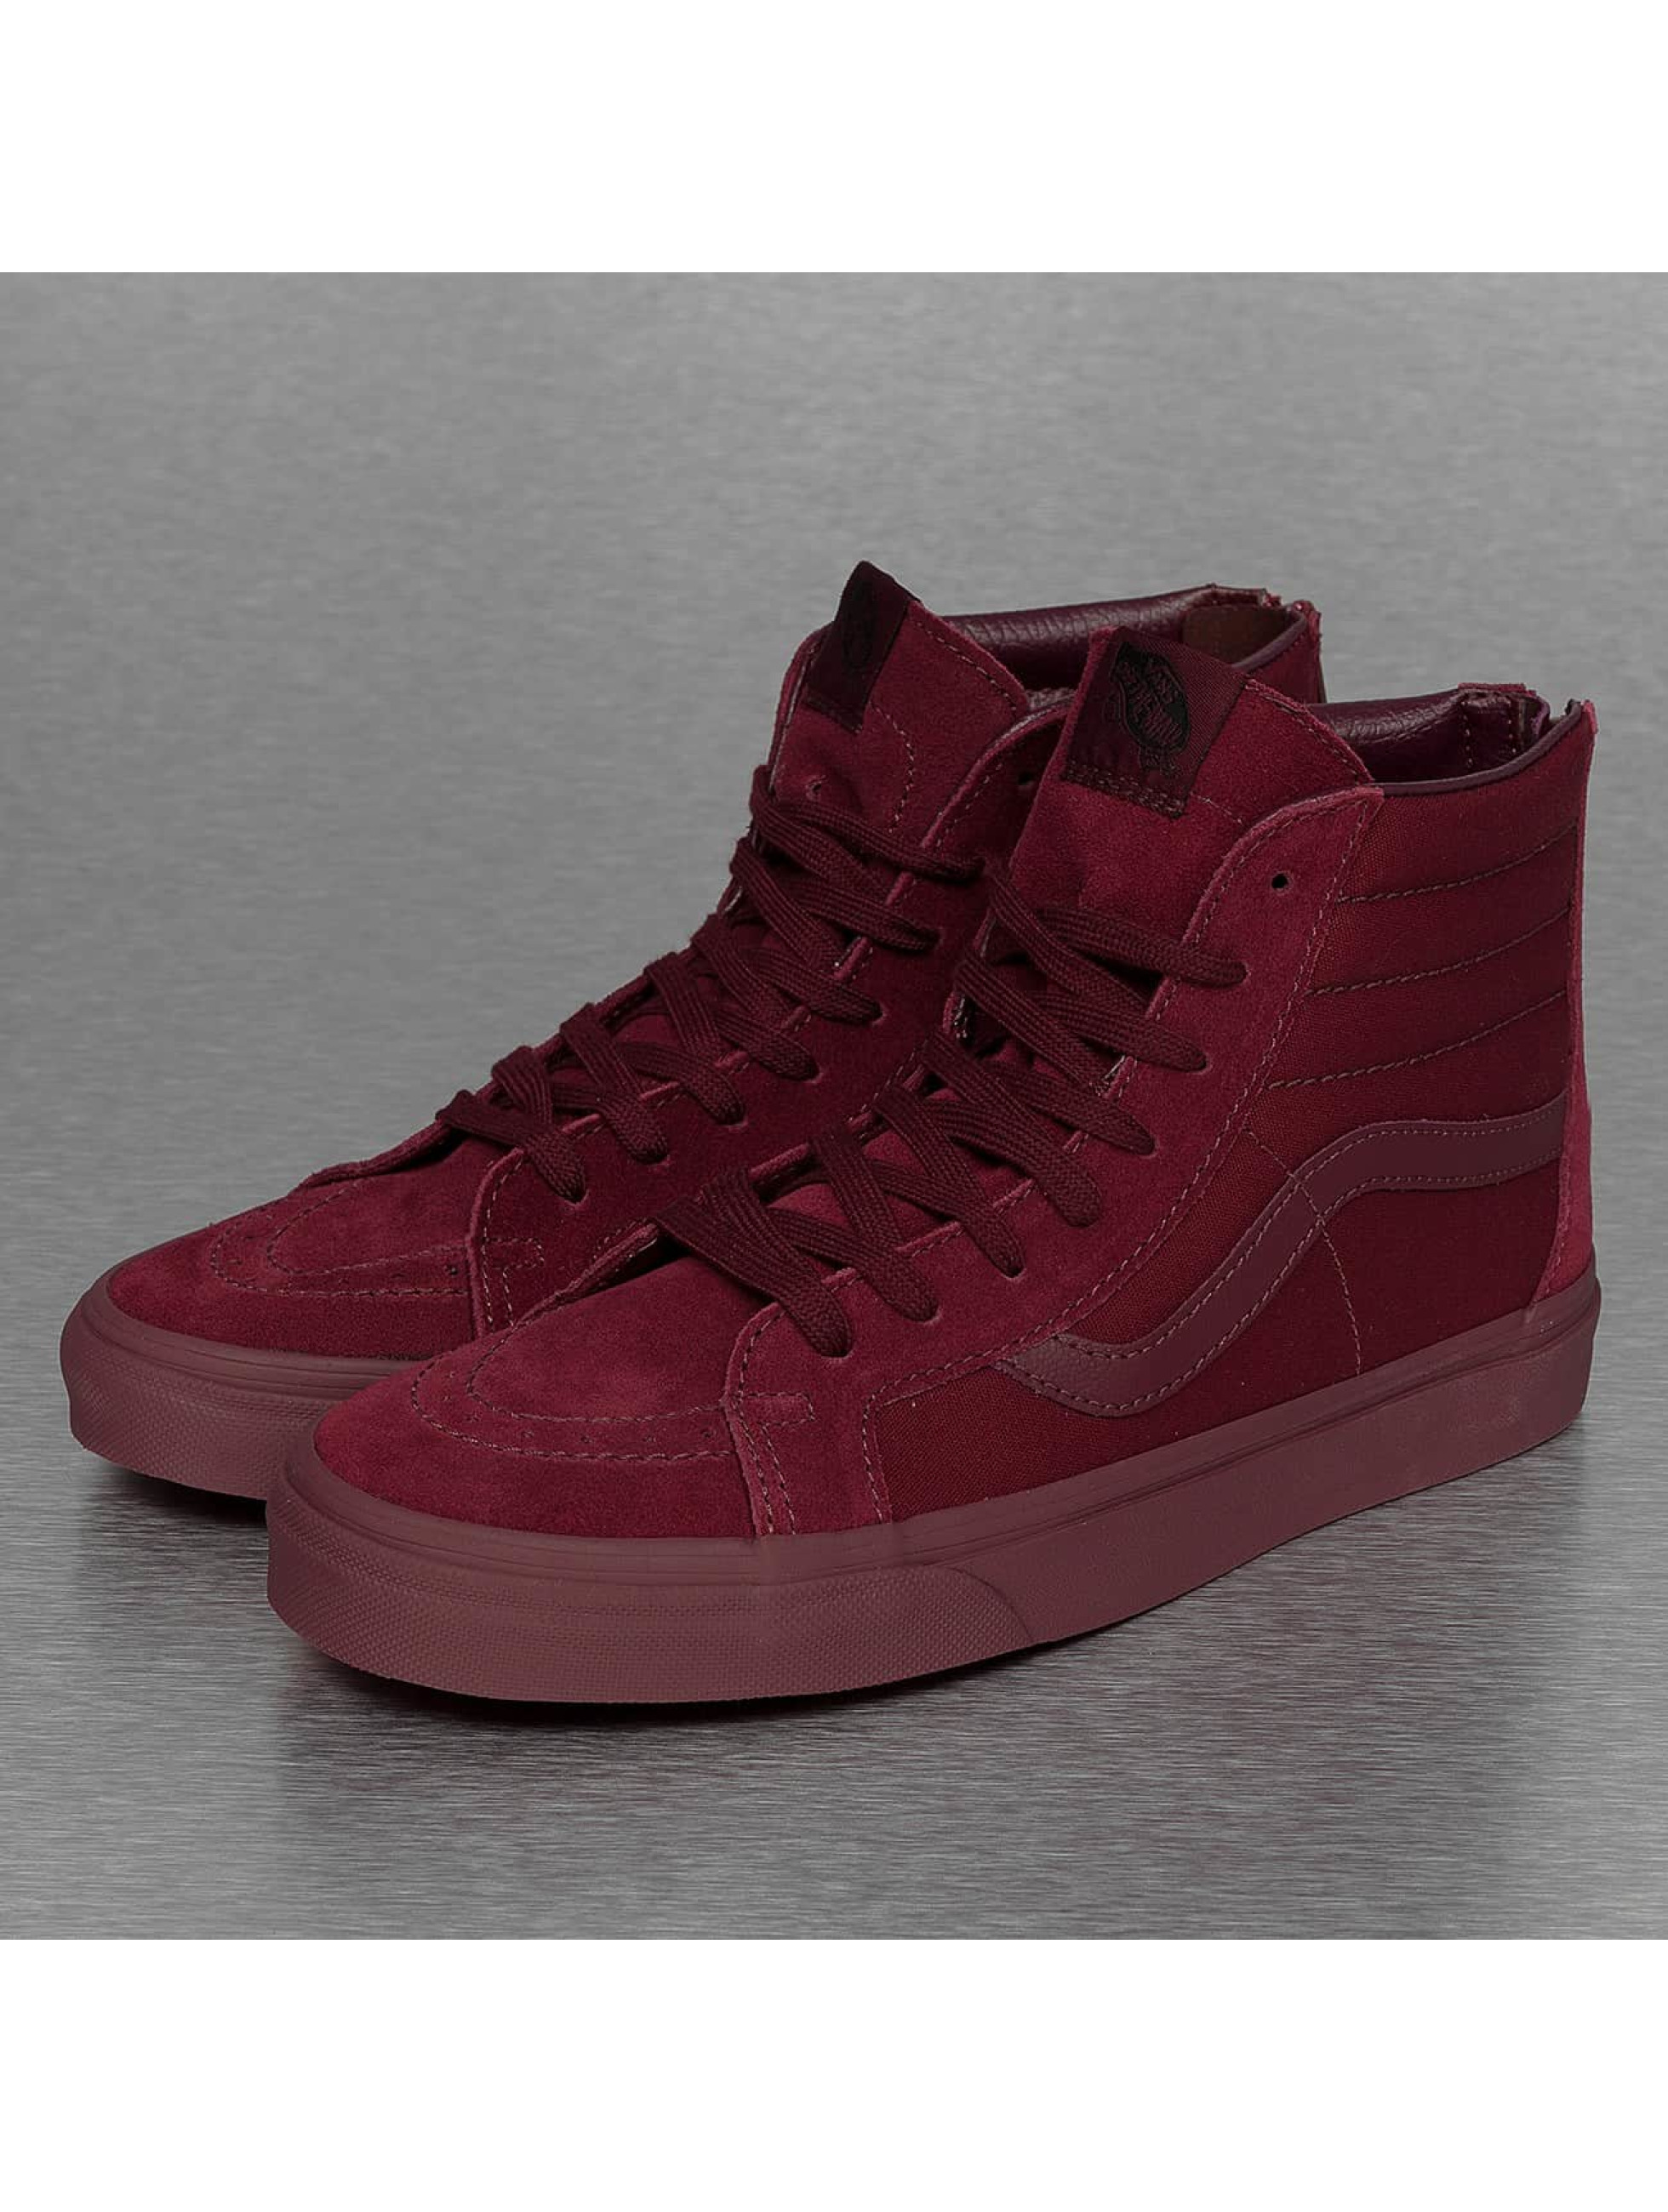 Vans Chaussures / Baskets SK8-Hi Reissue Zip en rouge